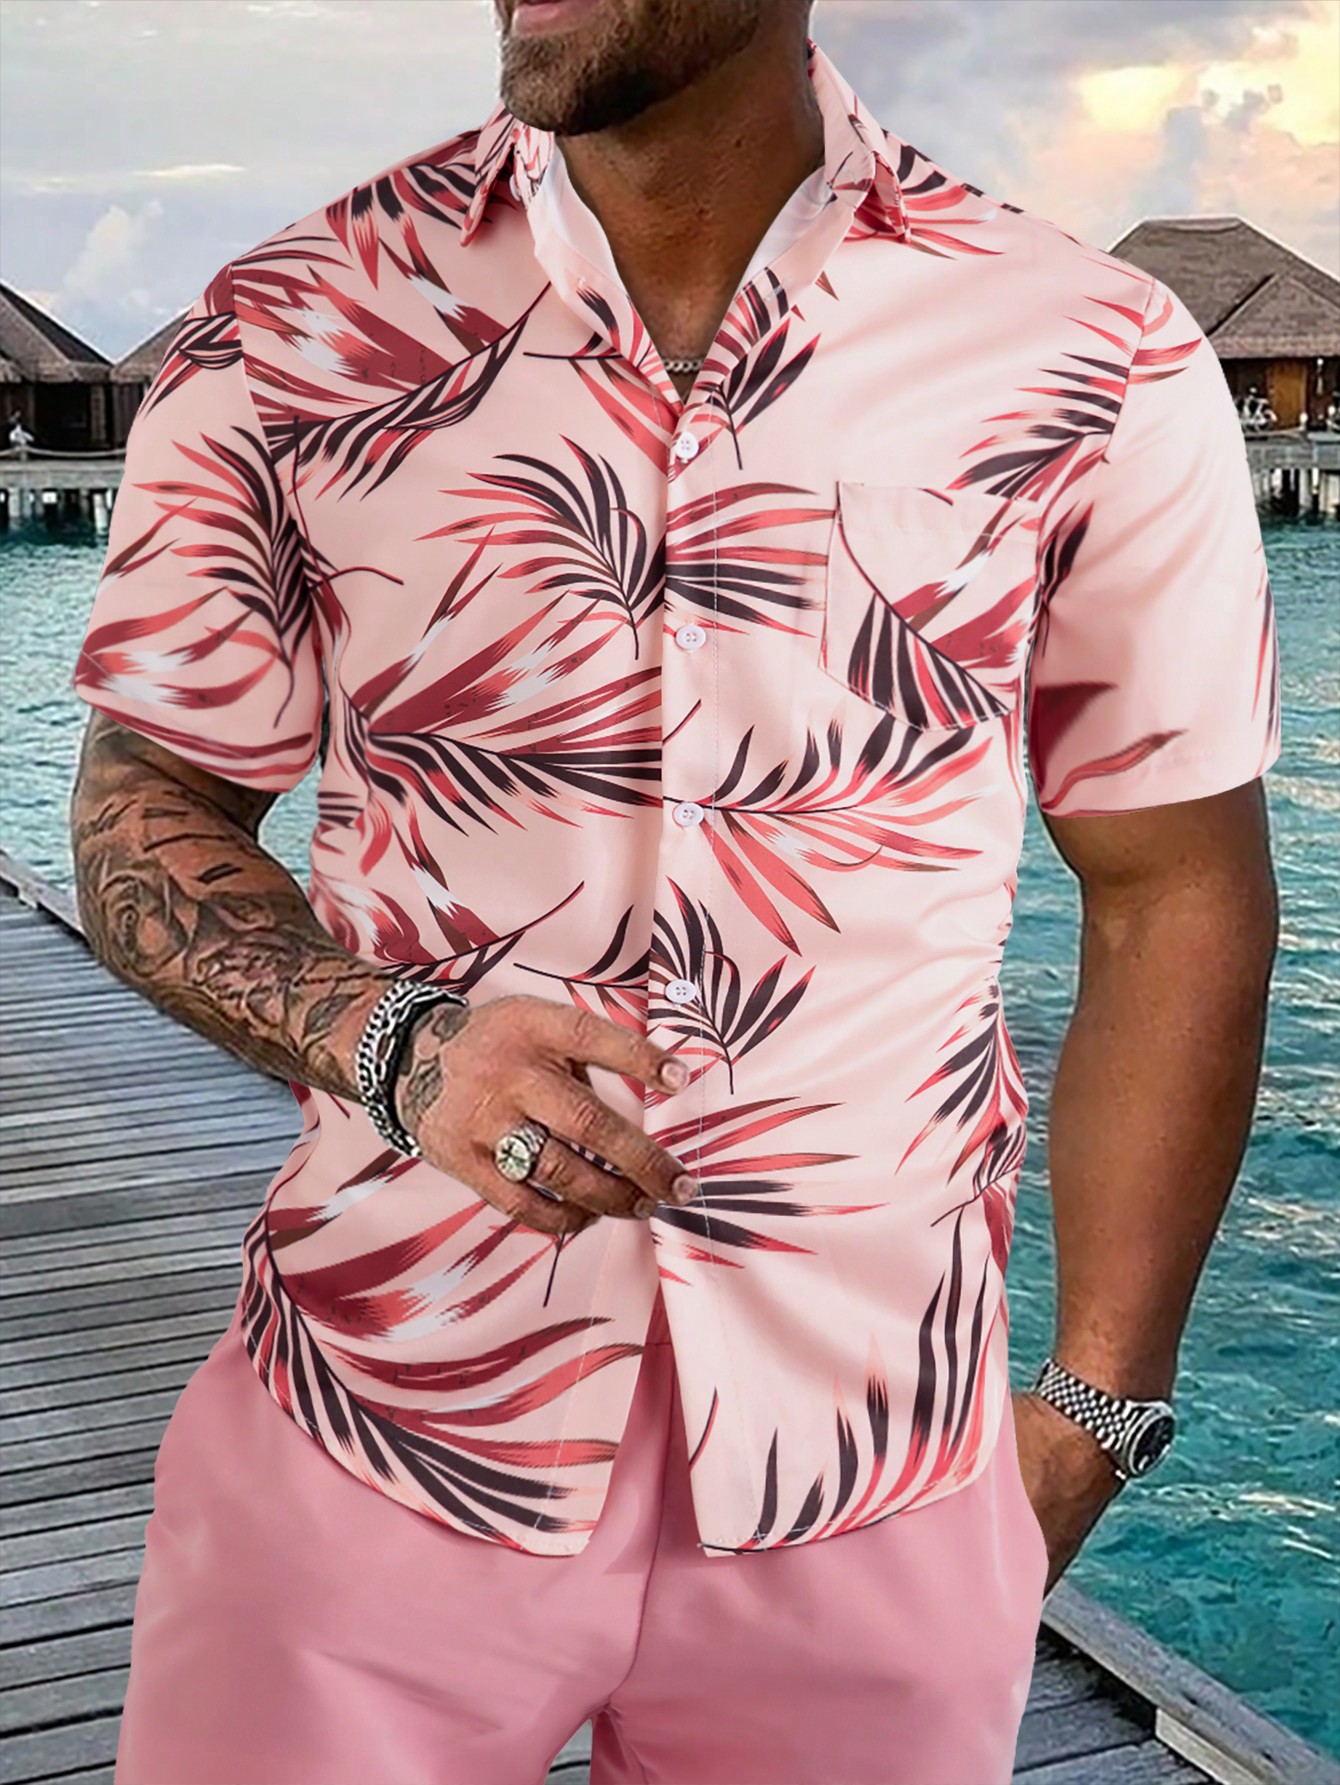 Мужская рубашка с короткими рукавами и принтом листьев на пуговицах Manfinity RSRT, коралловый розовый